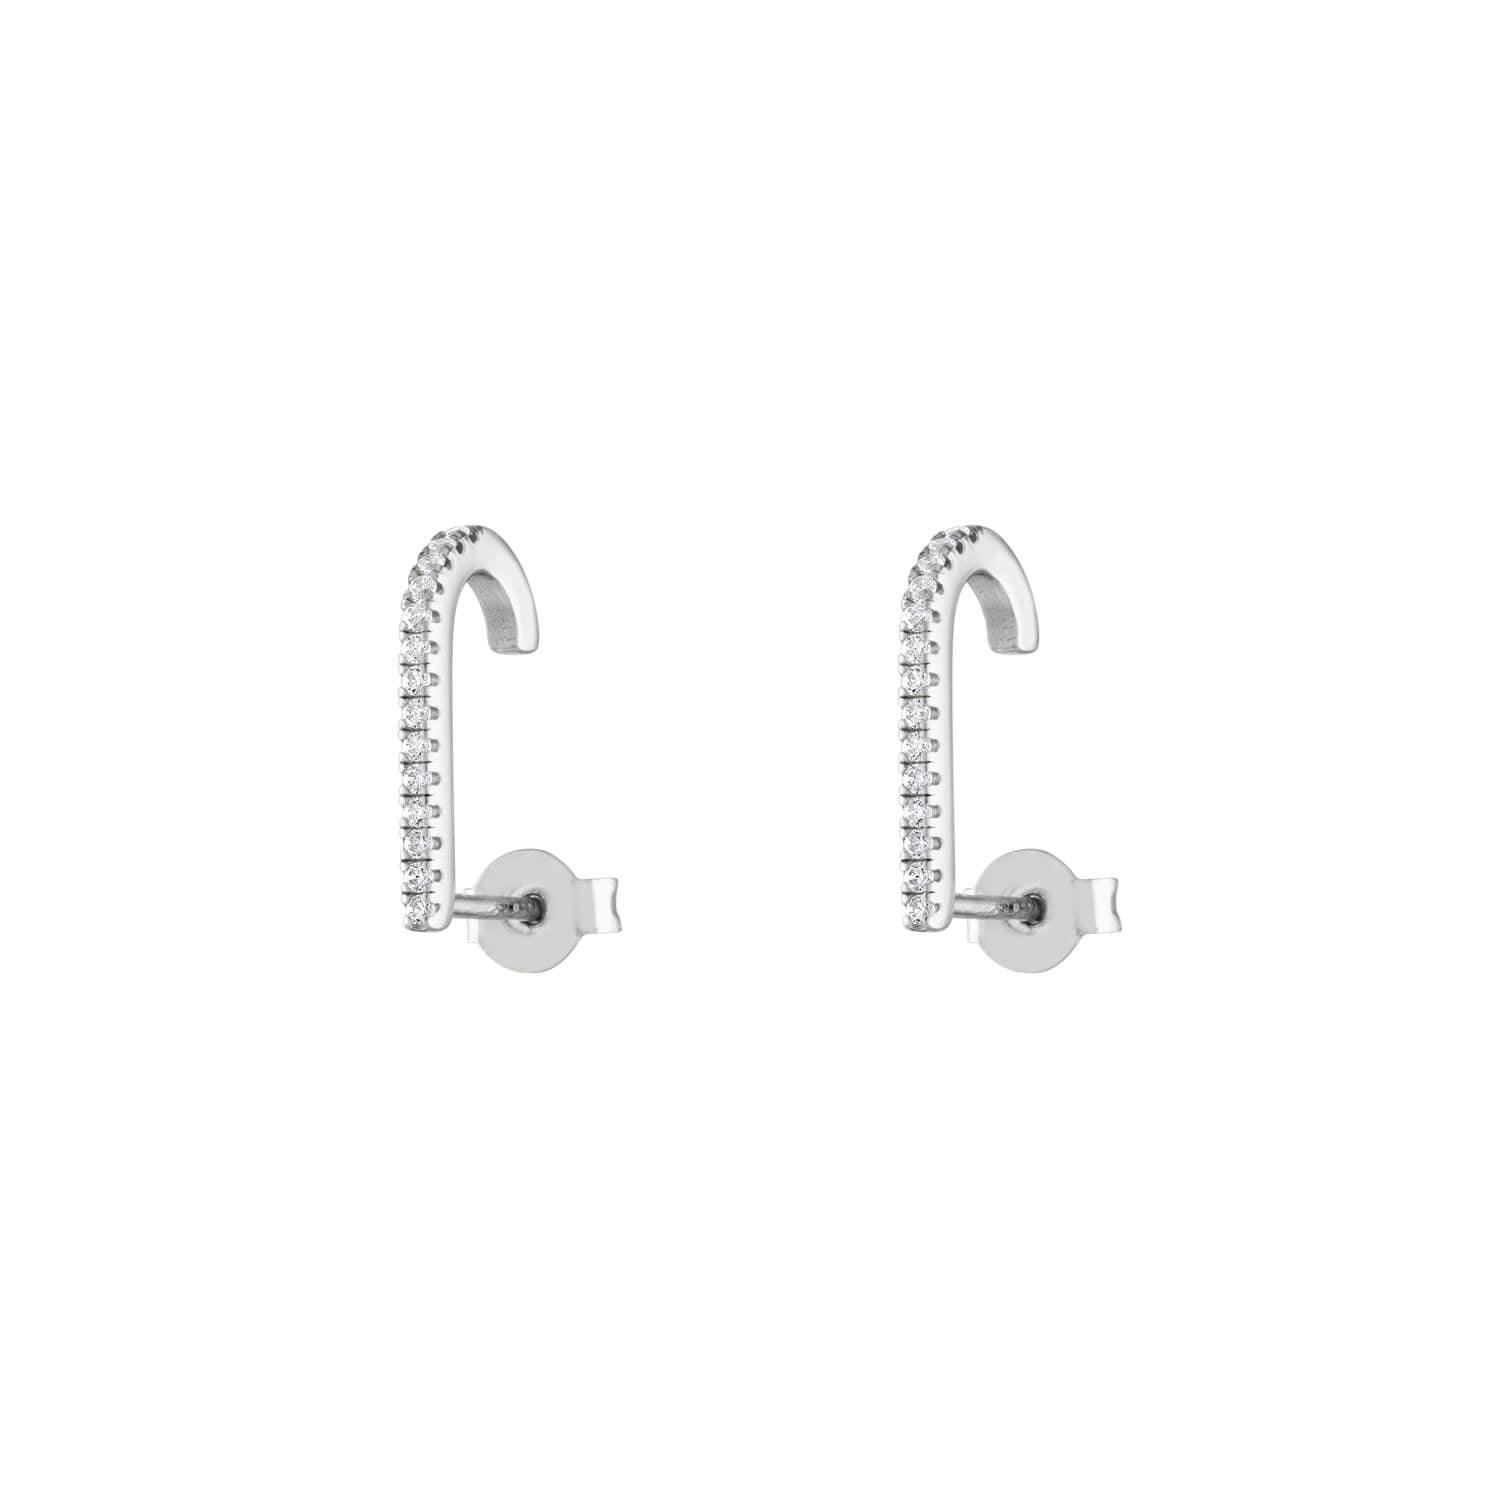 Celestial Hook Earrings in Sterling Silver